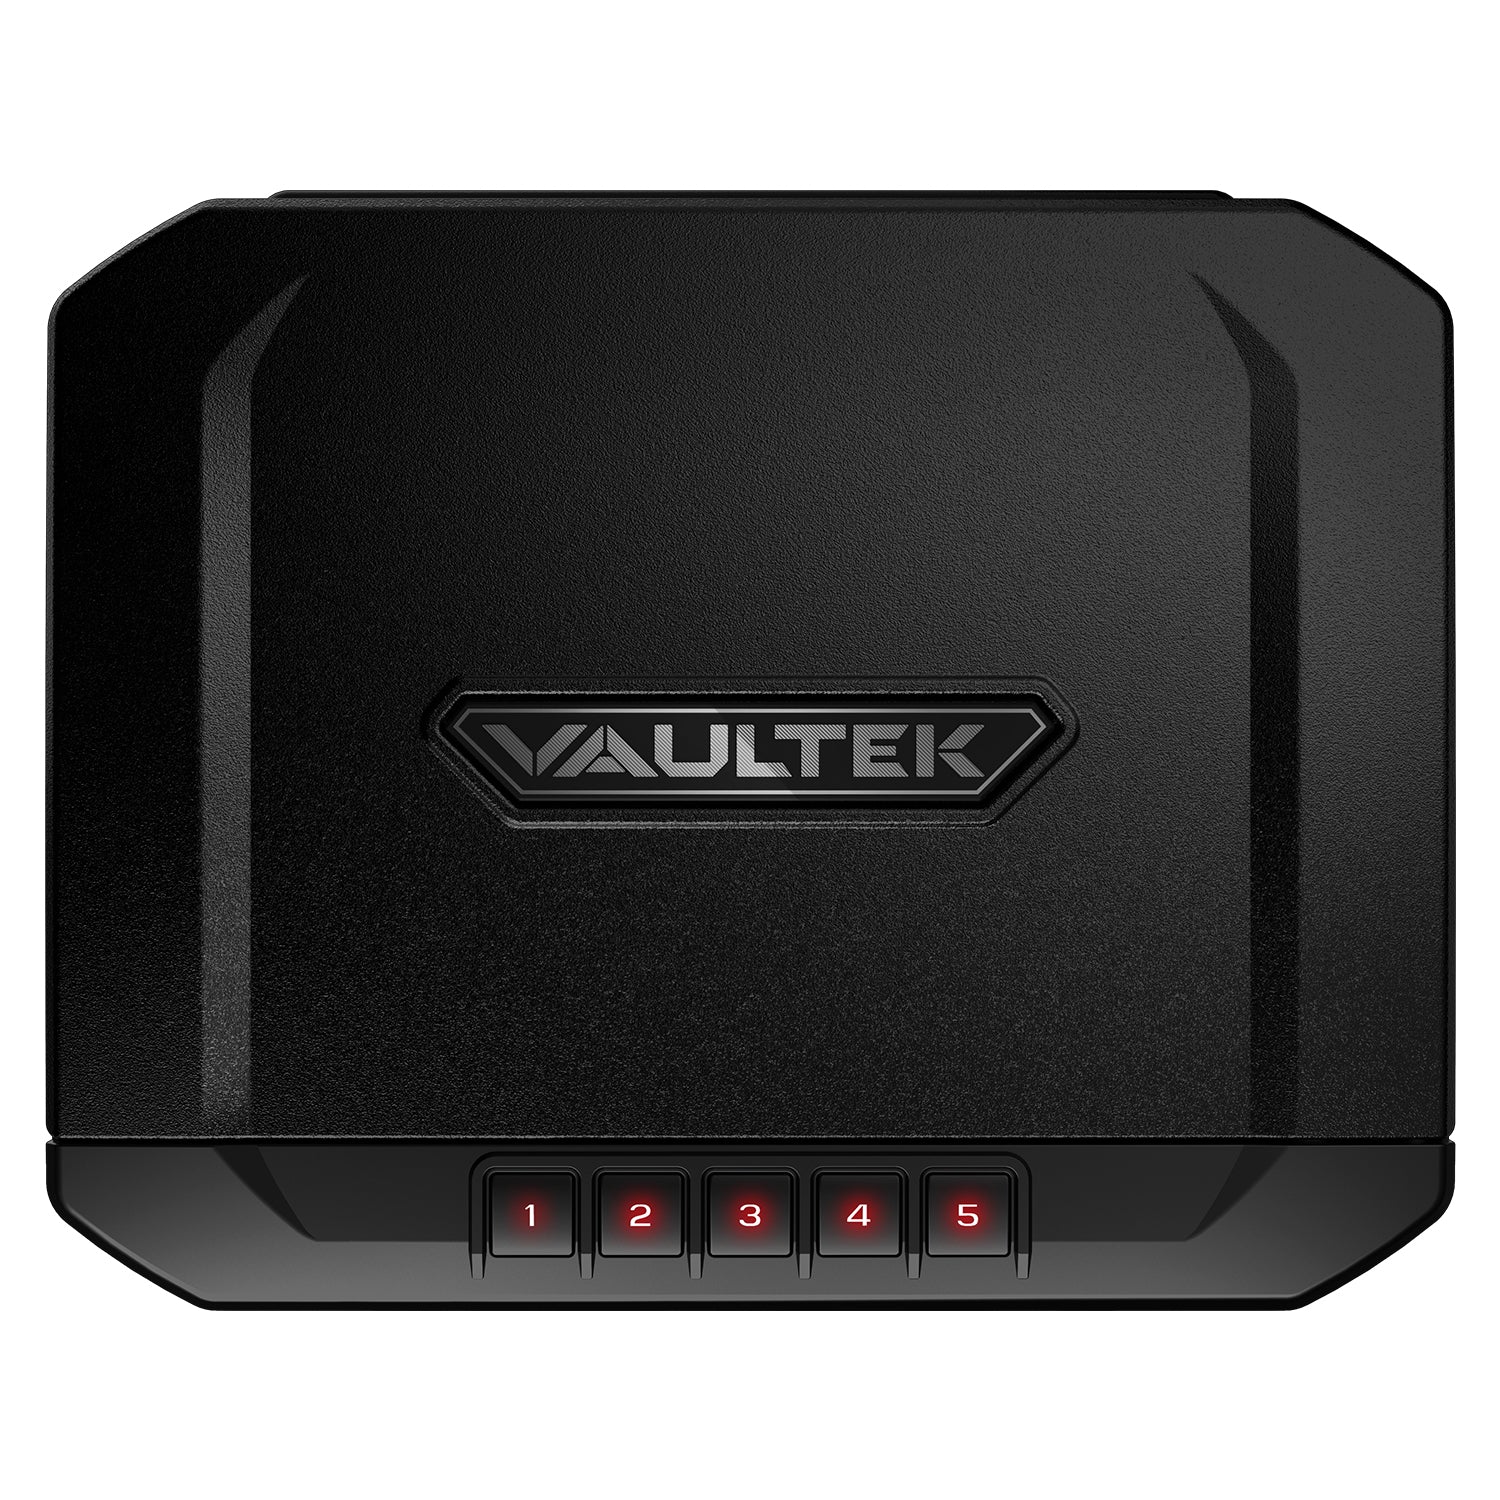 Vaultek - 10 series ve10sub-compact keypad gun safe - MODLOCK